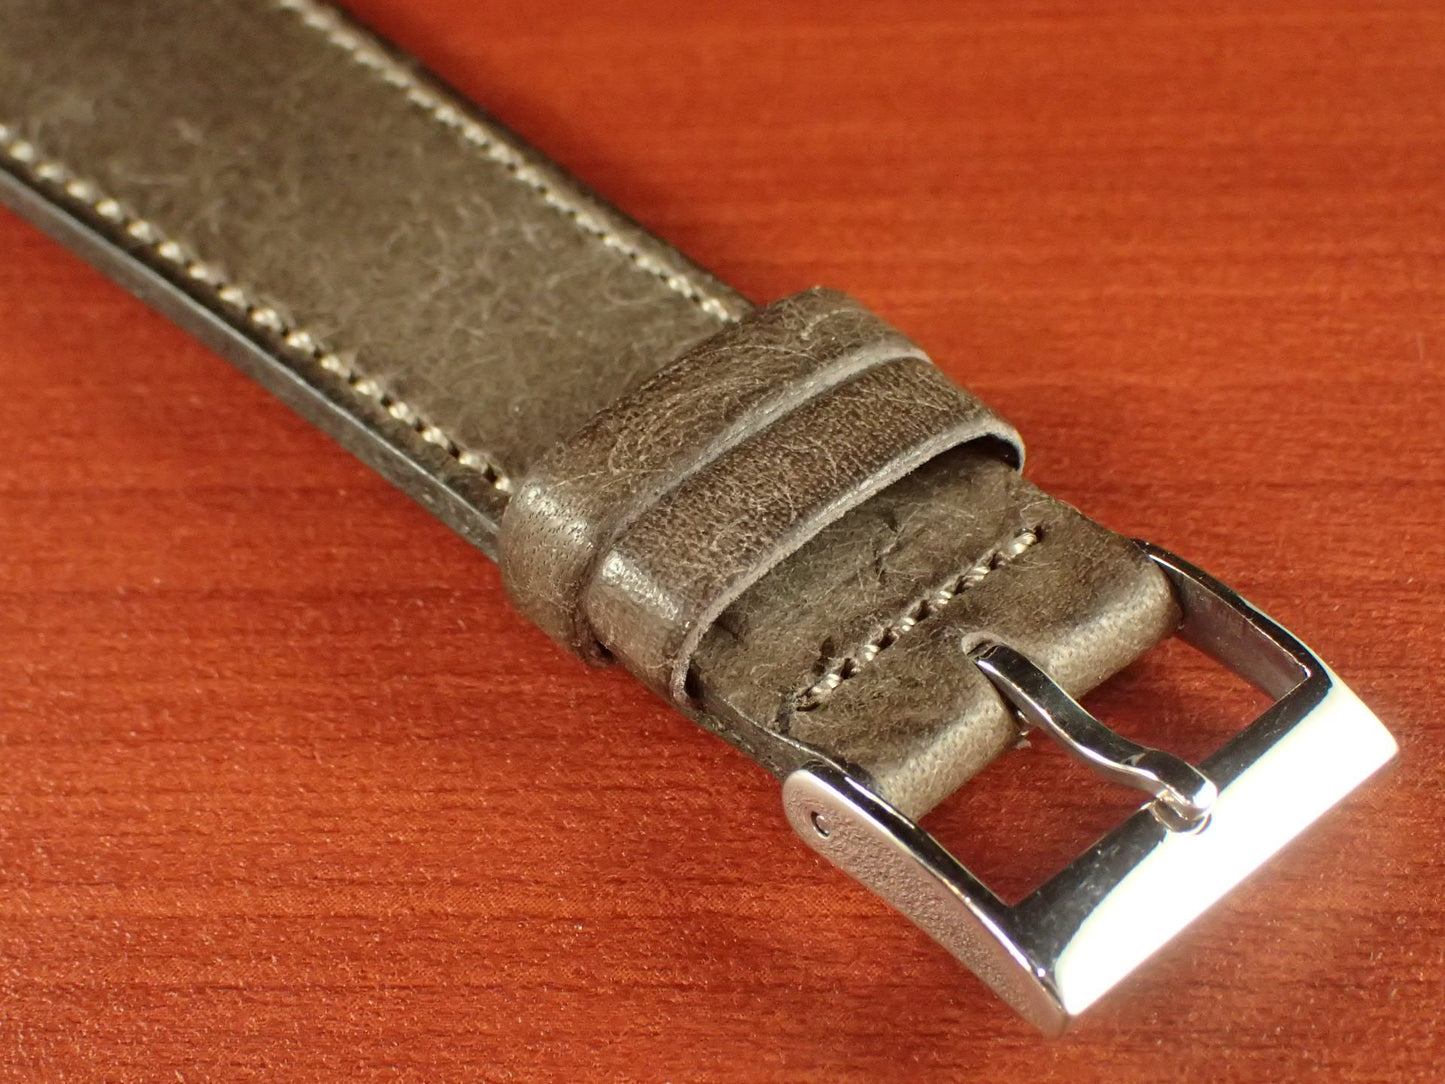 Virgilio VIVIDO Shoulder leather strap (Gray)